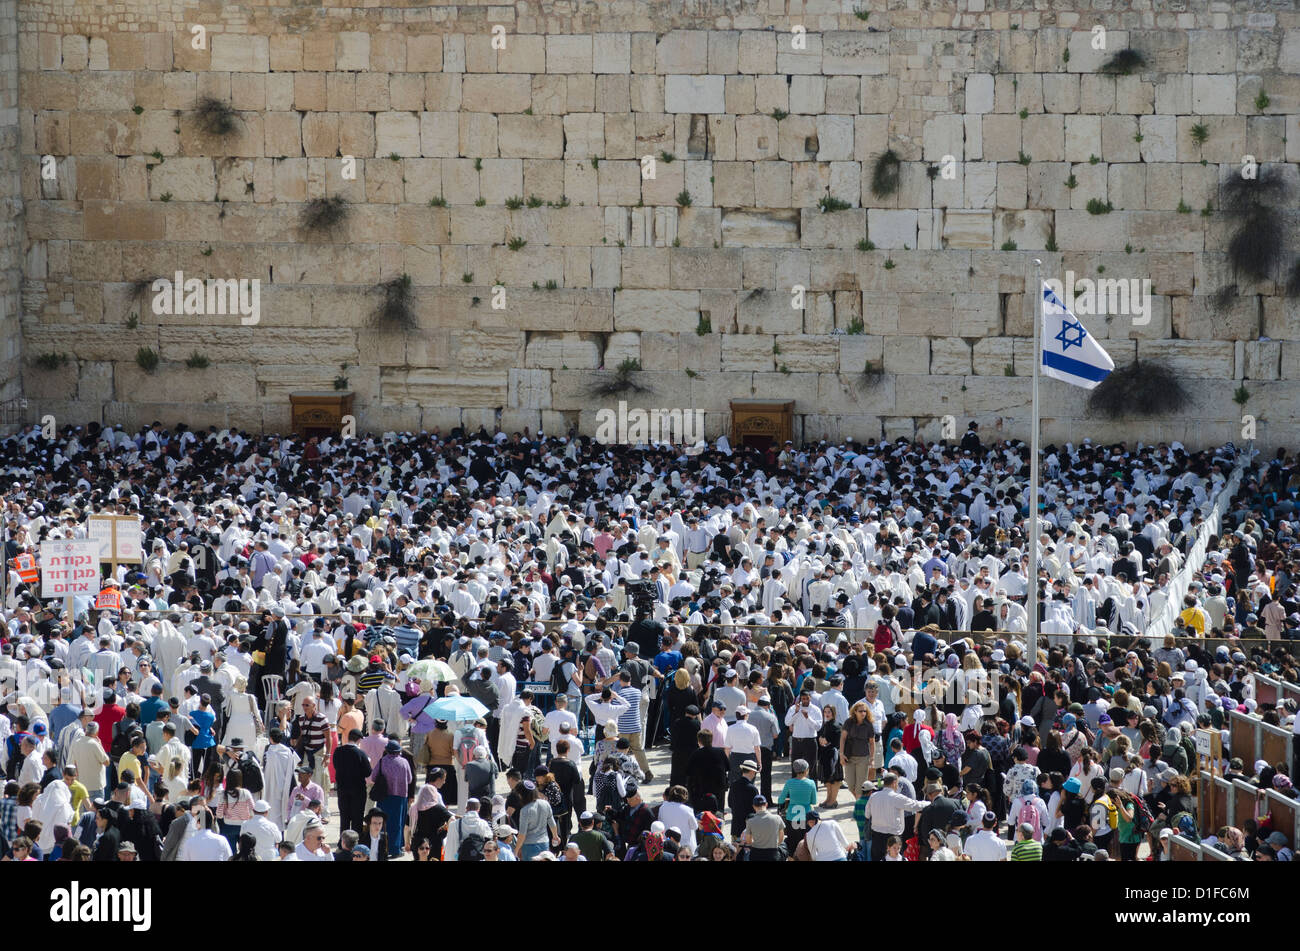 Traditionelle Cohens Segnung an der Klagemauer während der Pessach jüdische Festival, Altstadt von Jerusalem, Israel, Nahost Stockfoto